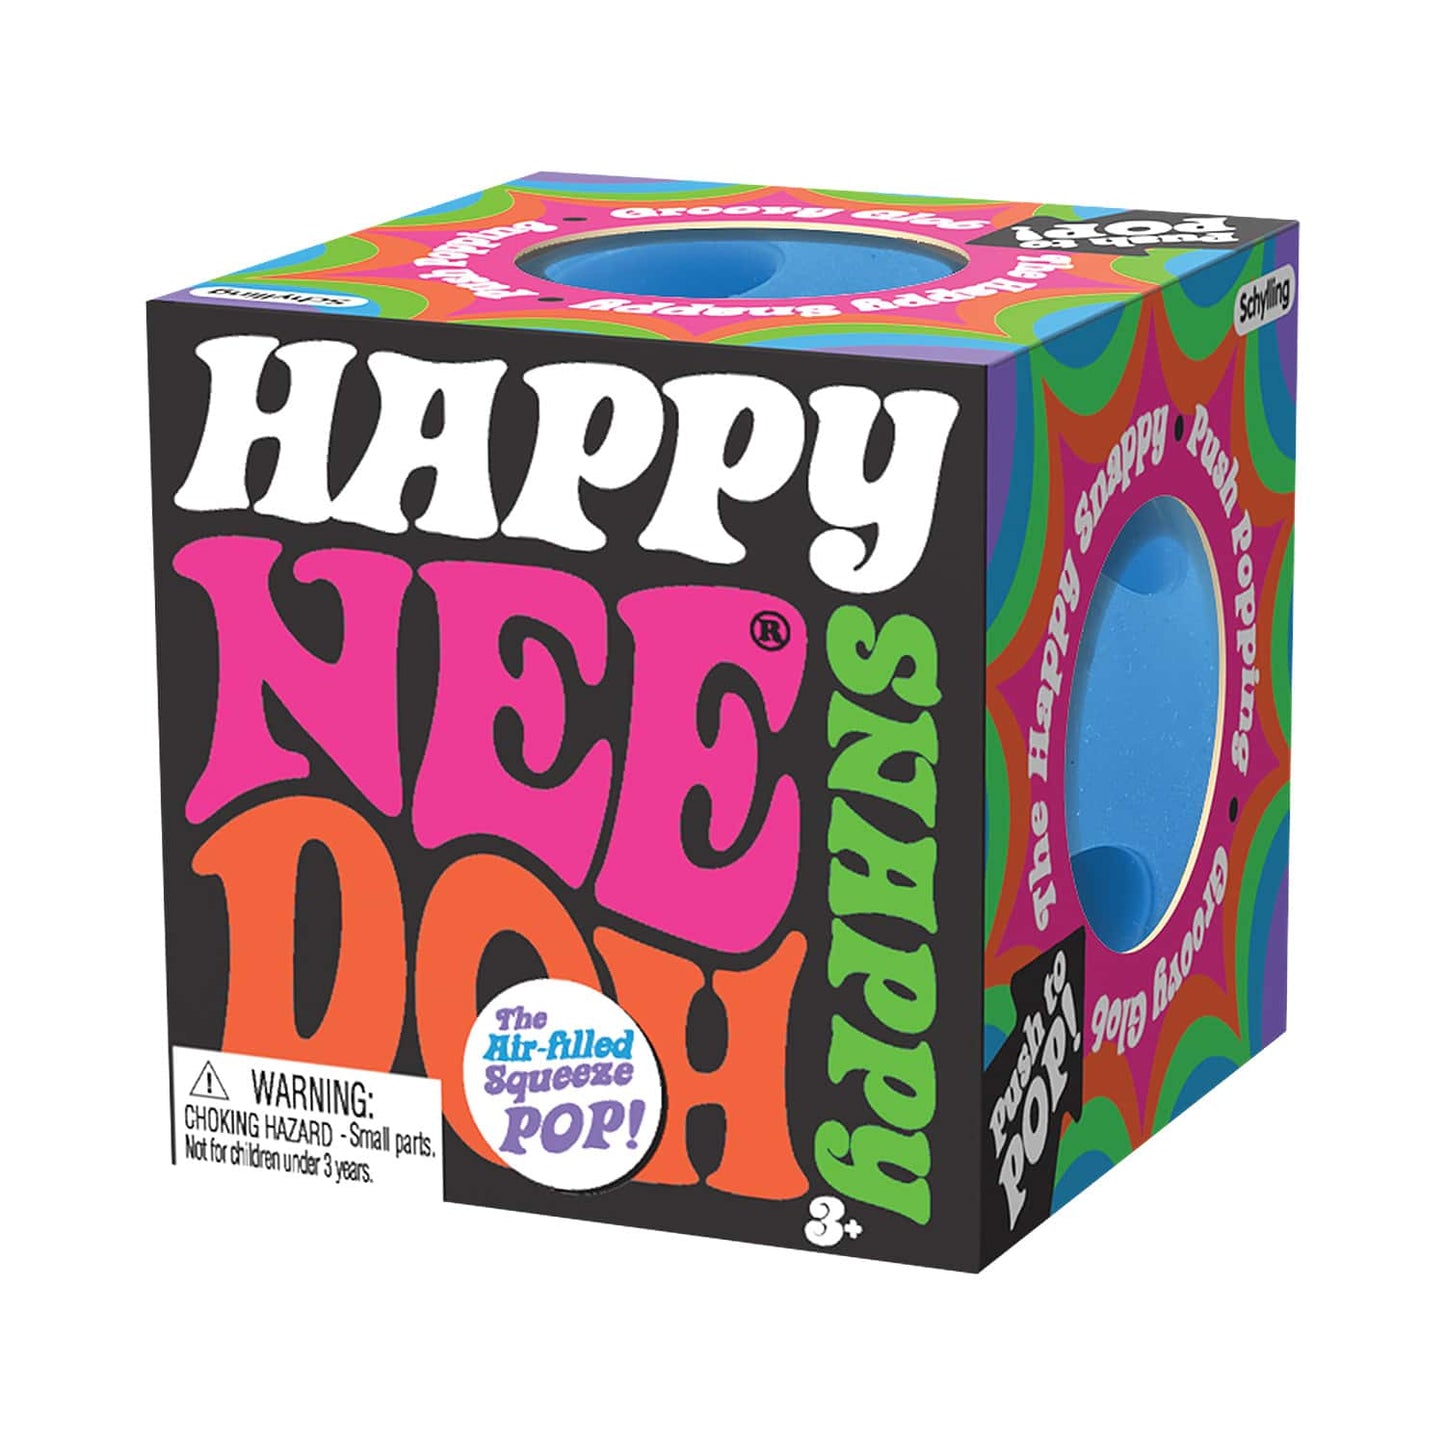 Happy Snappy NeeDoh Ball